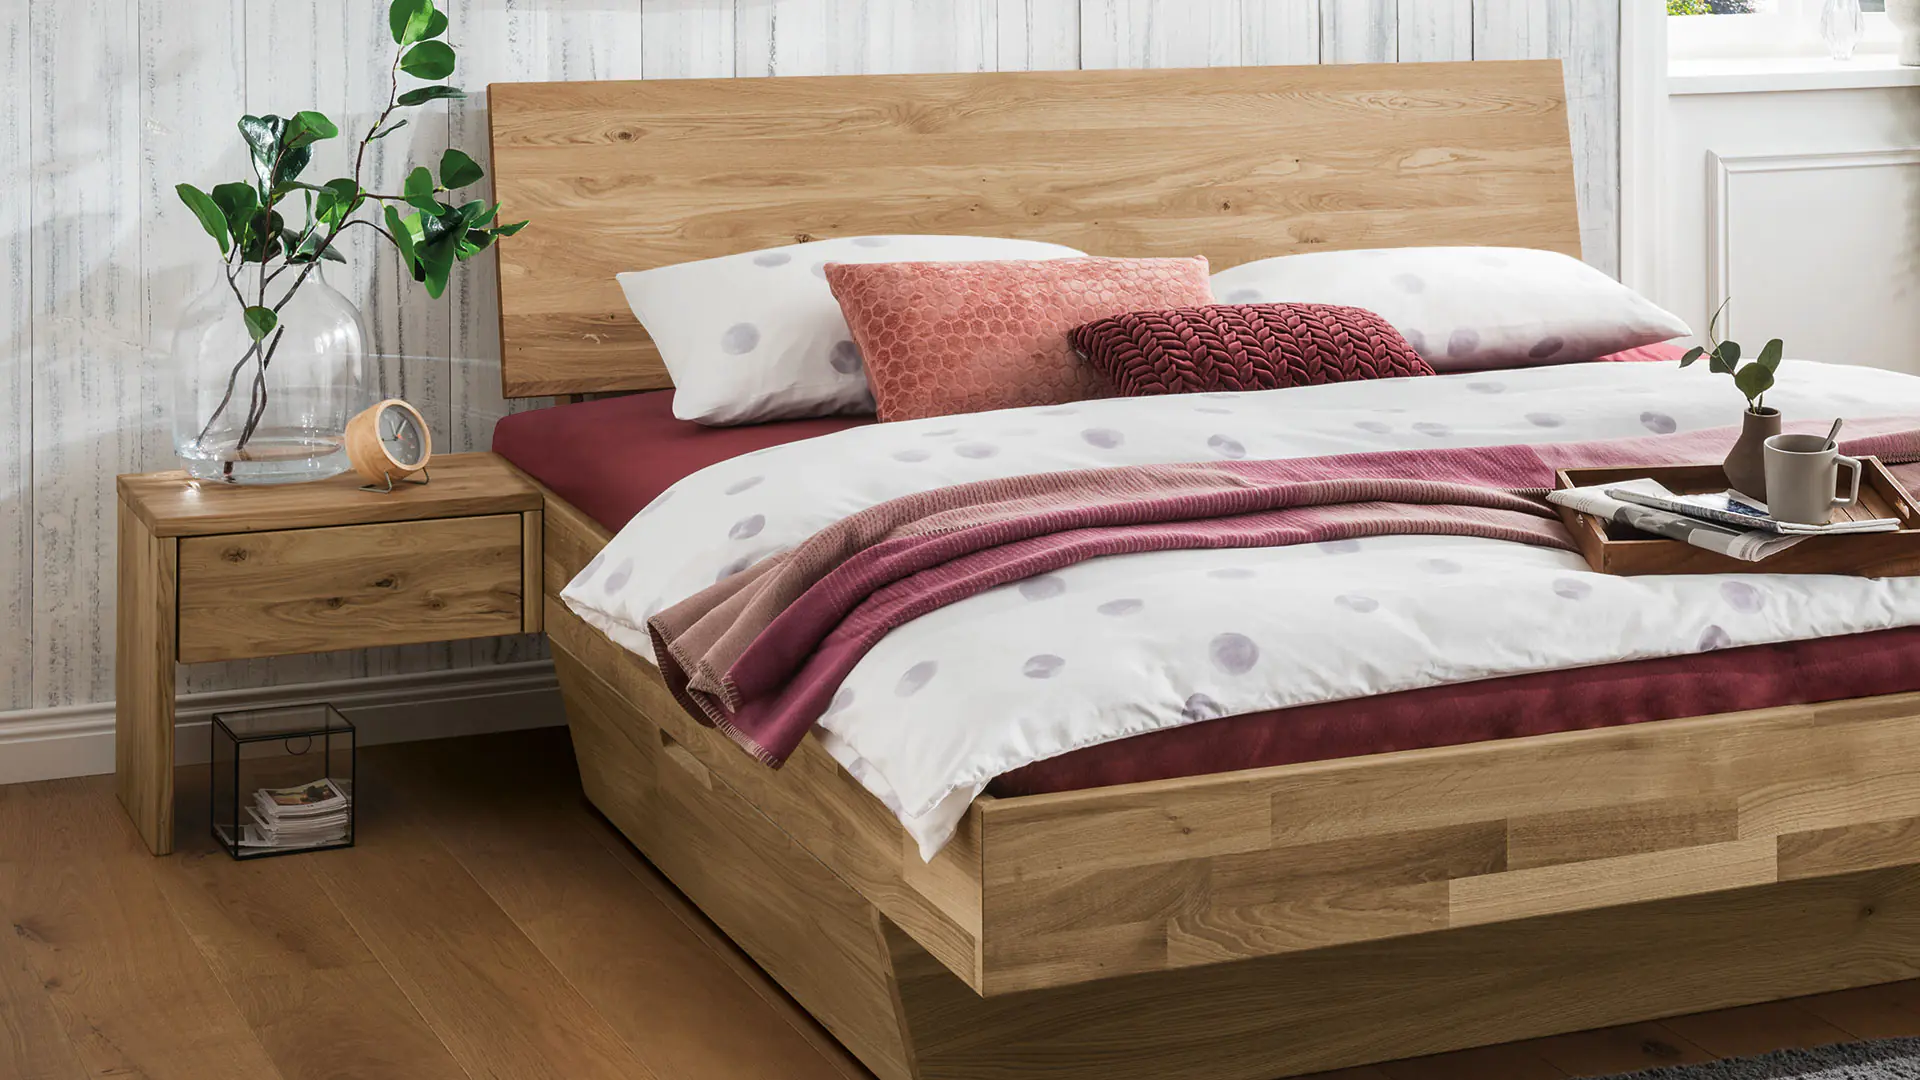 Belluno massief houten nachtkastje, wild eiken